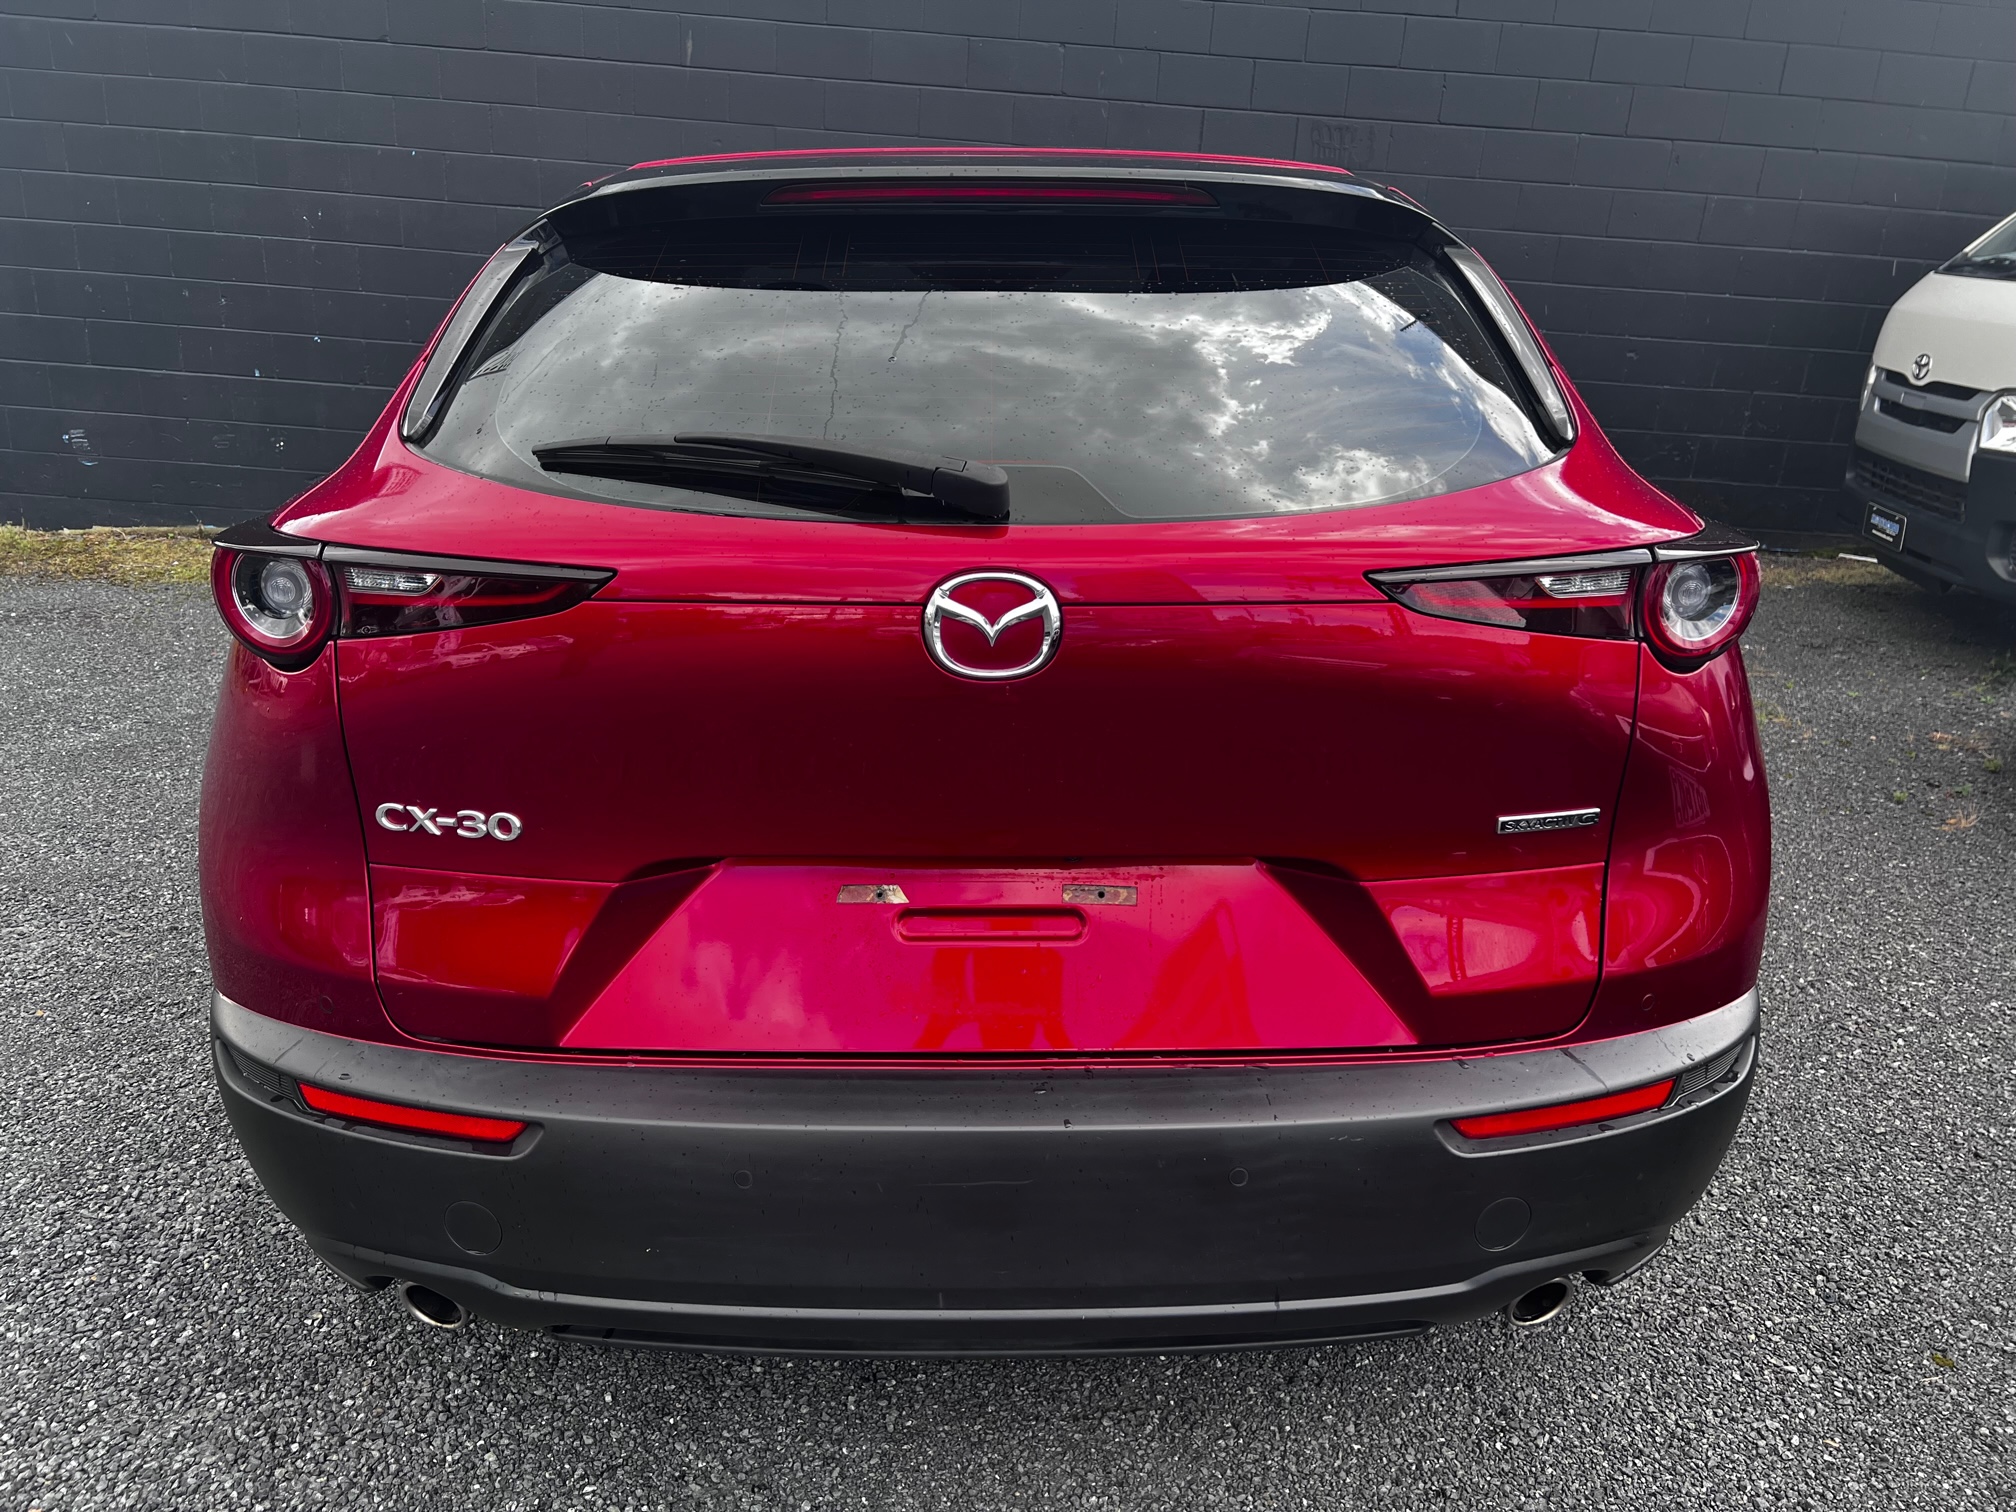 Mazda CX-30 2020 Image 4